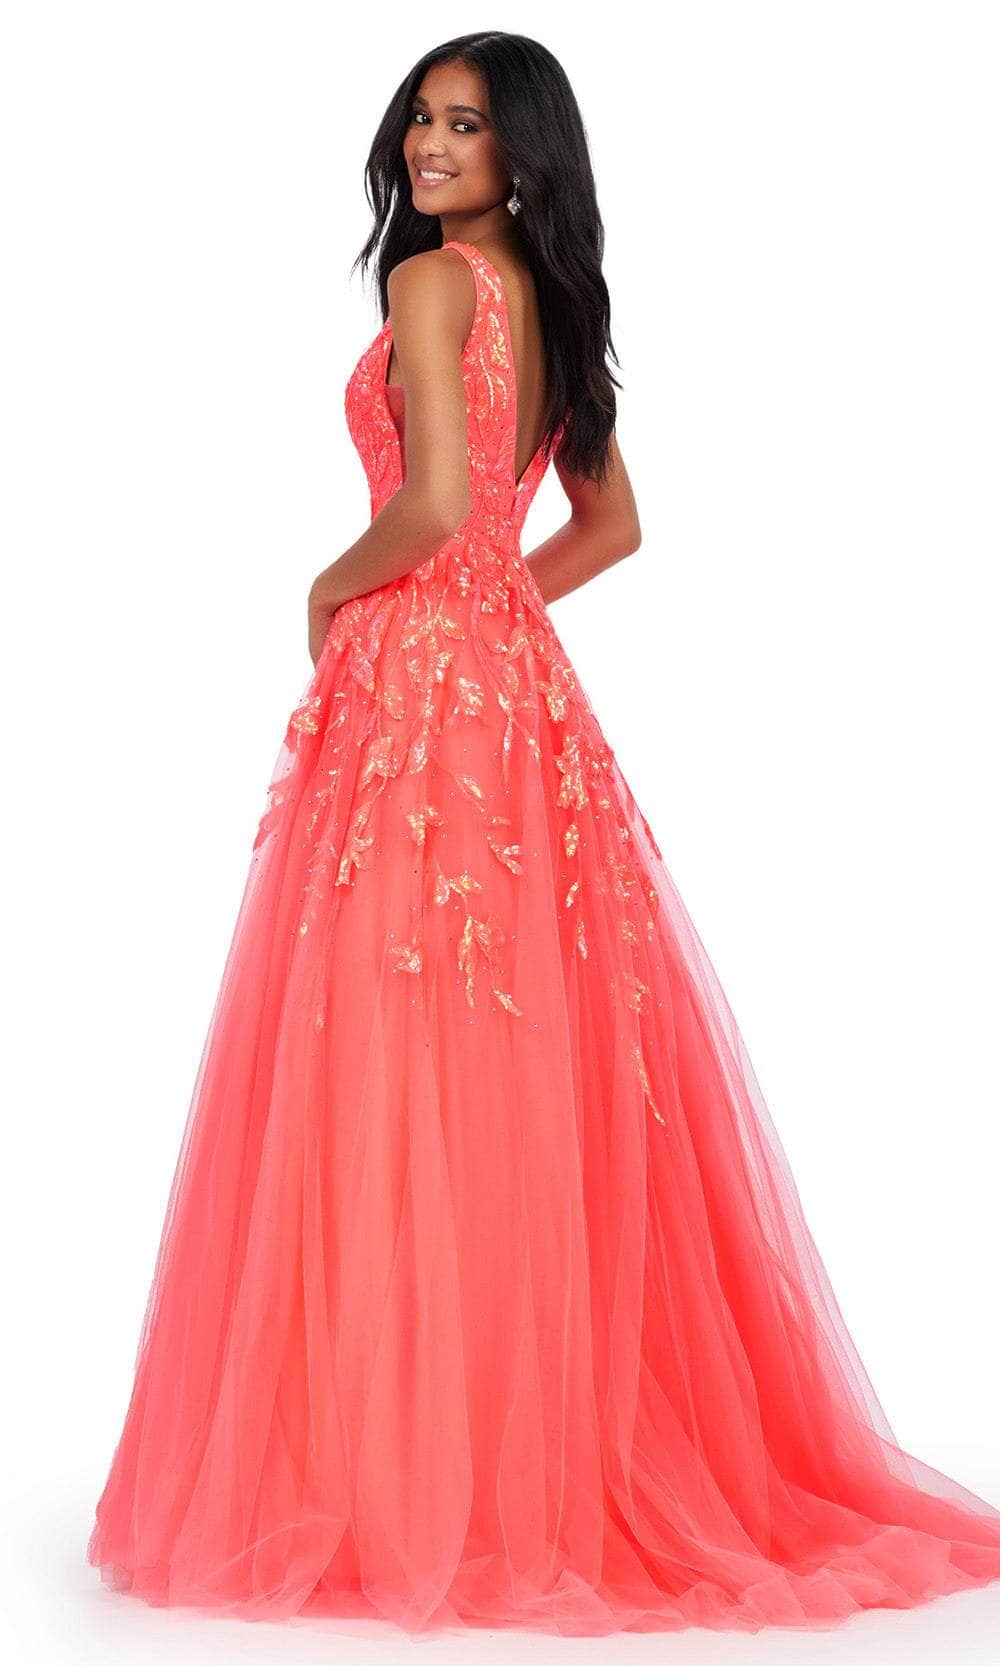 Ashley Lauren 11470 - Tulle Sequin Prom Dress Prom Dresses